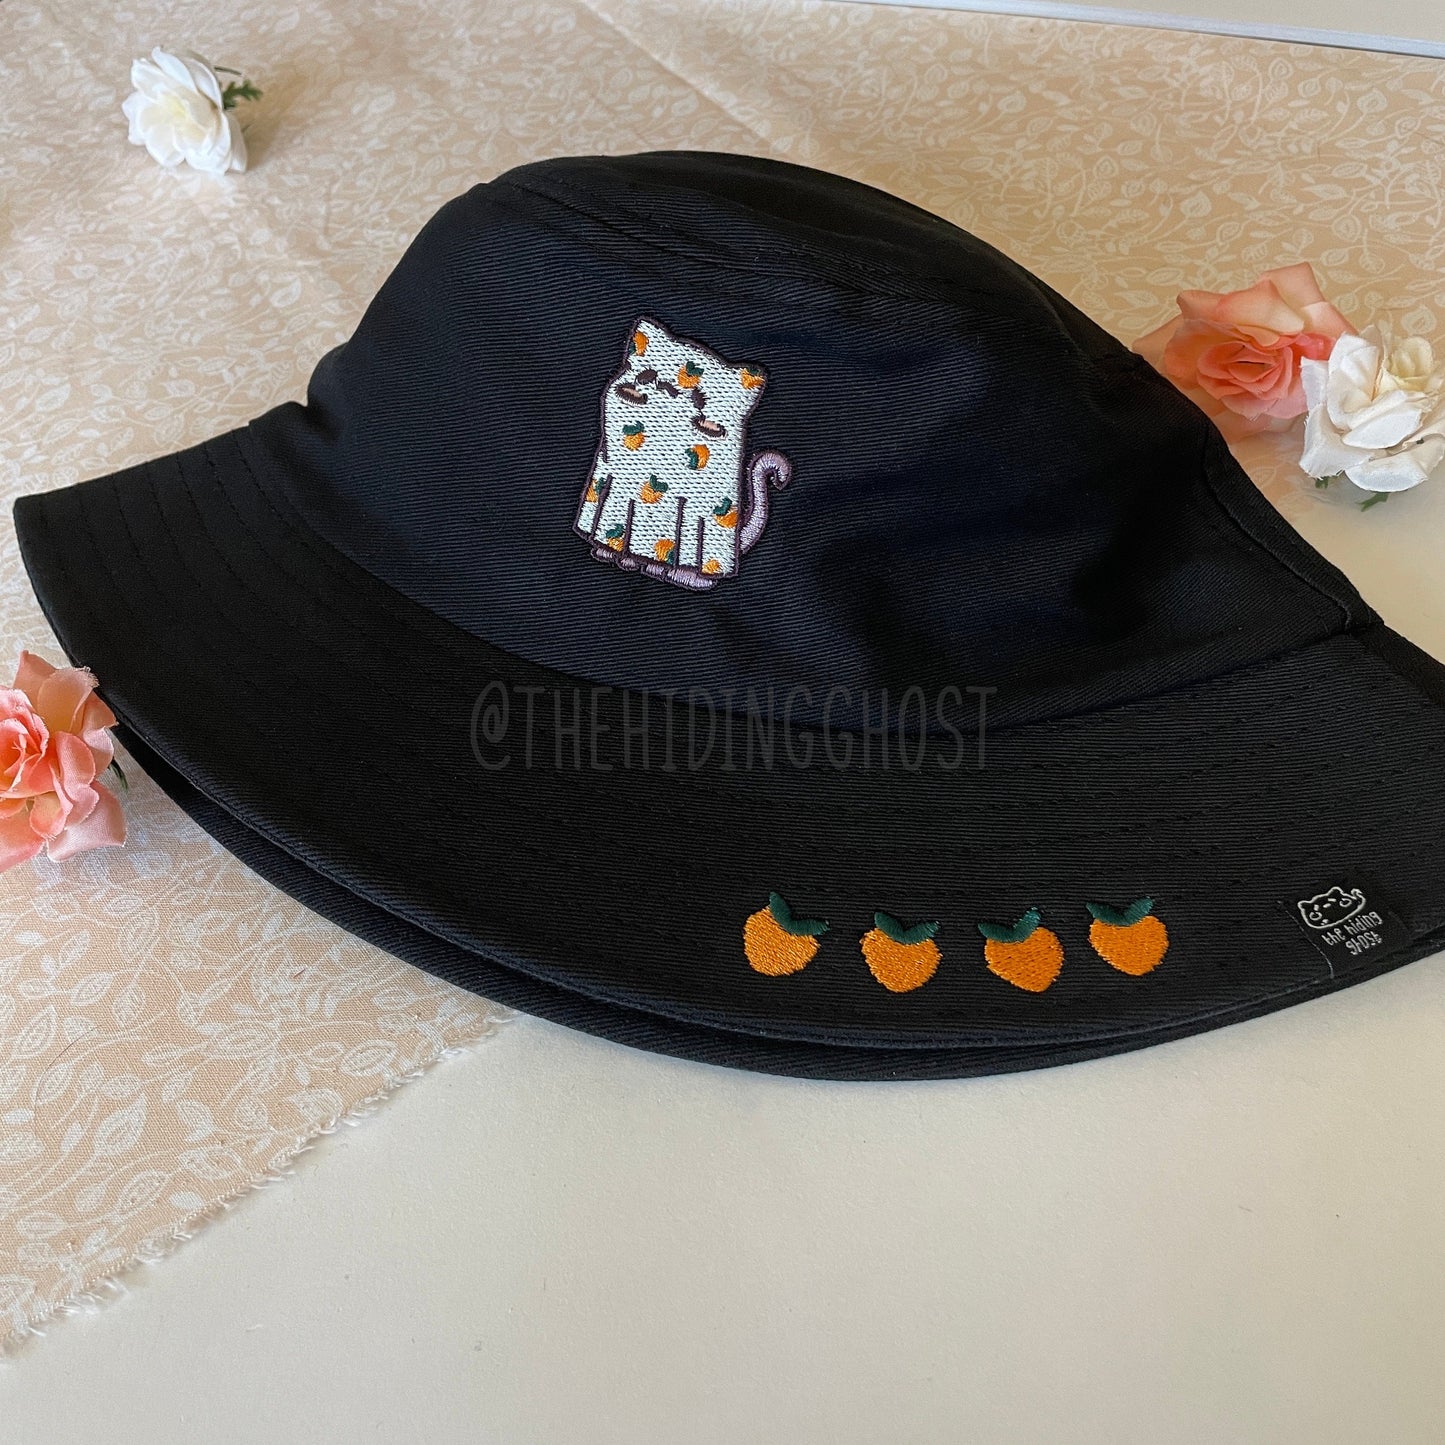 Black Cat Sheet Ghost Bucket Hat